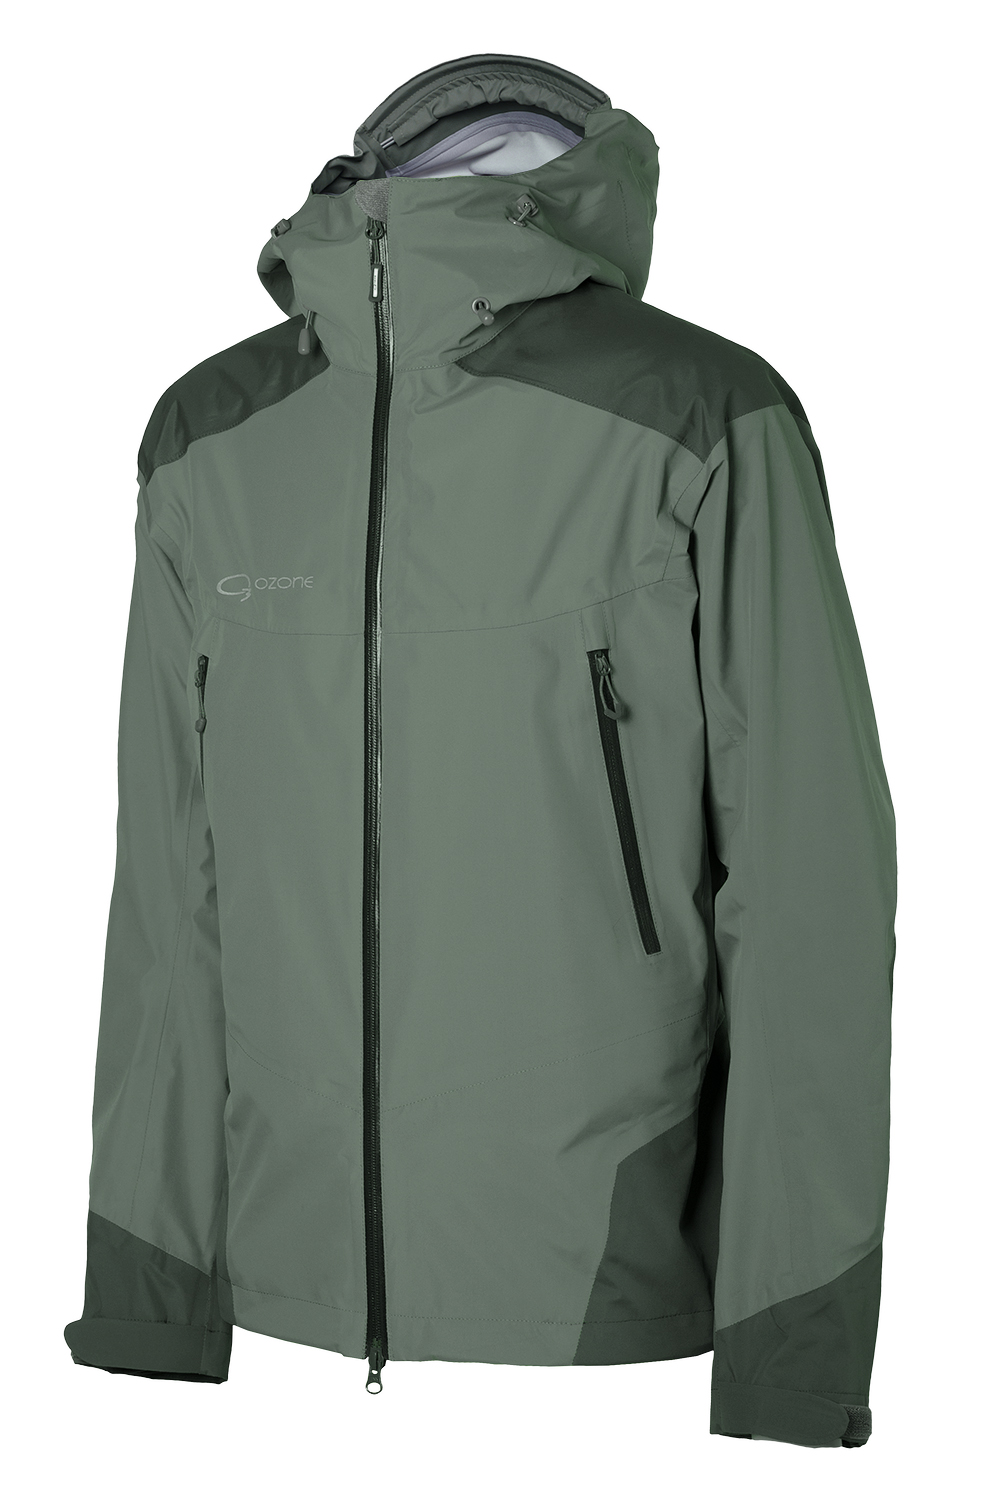 Мембранная куртка Rex 2 купить в магазине одежды для альпинизма O3 Ozone